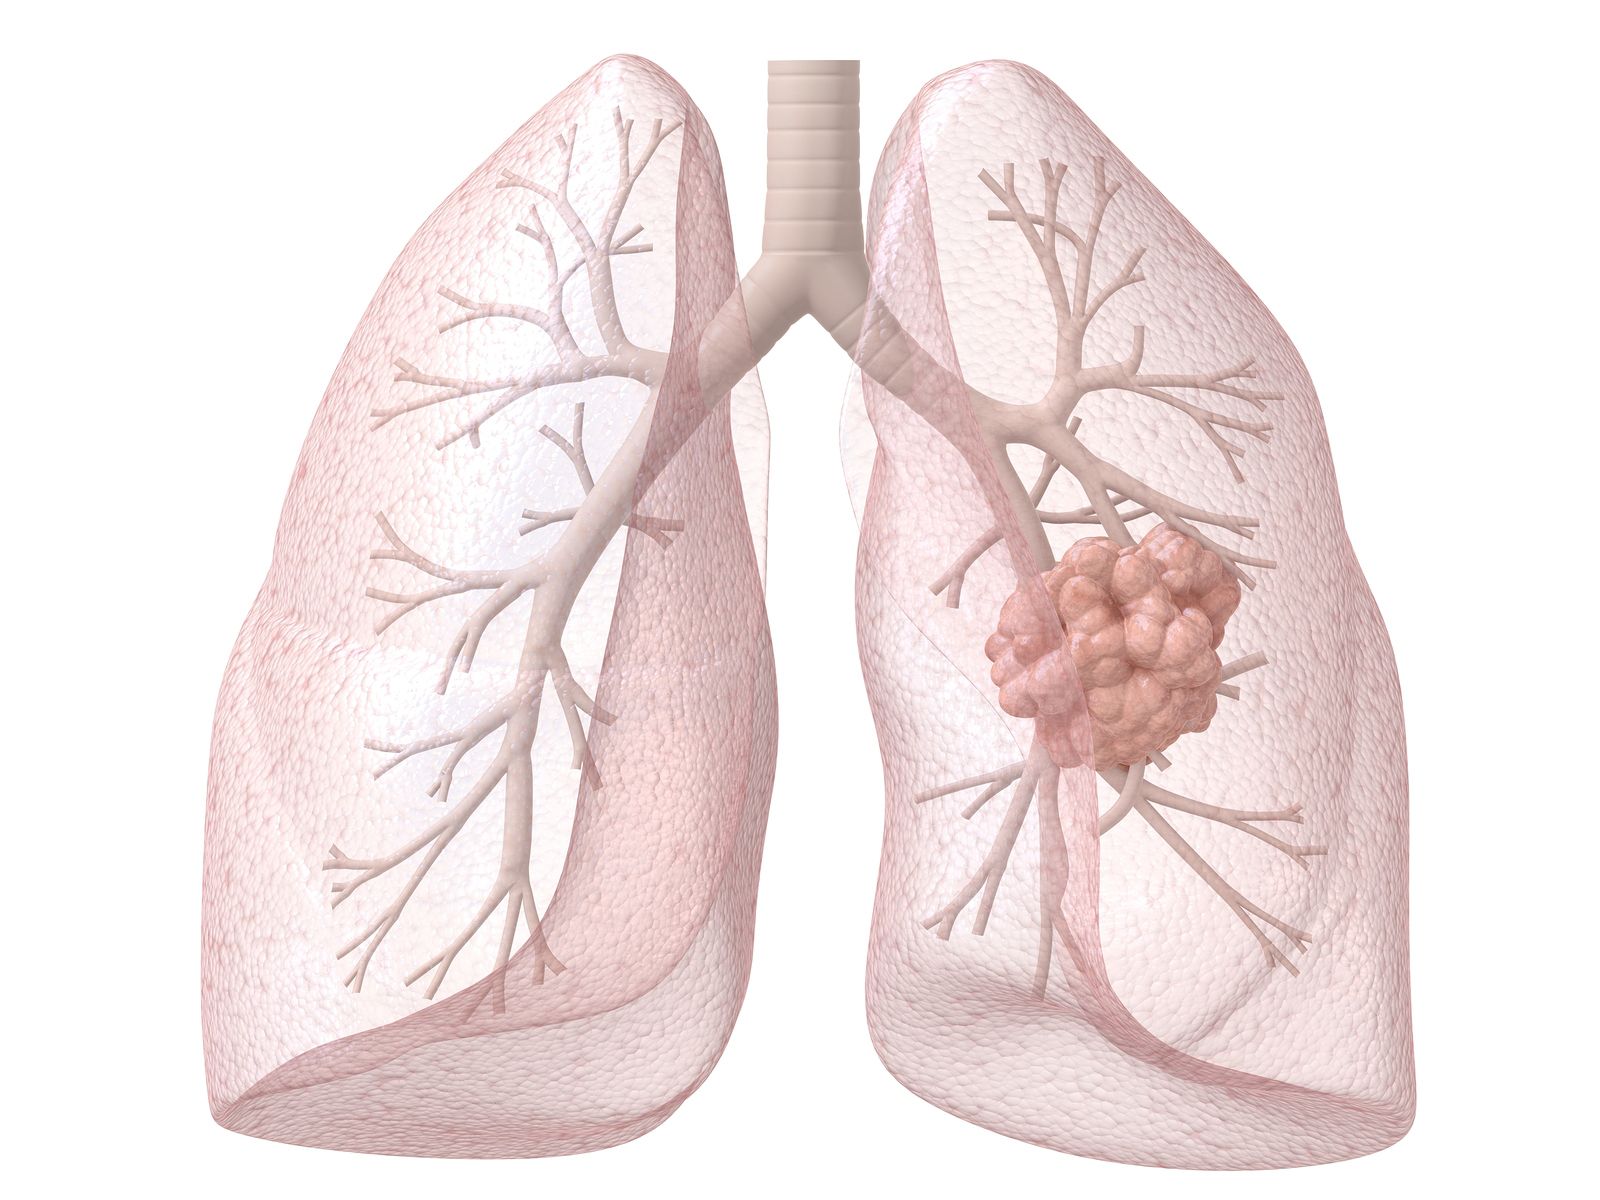 Un estudio muestra que el radón interior a dosis altas duplica el riesgo de cáncer de pulmón (Bigstock)